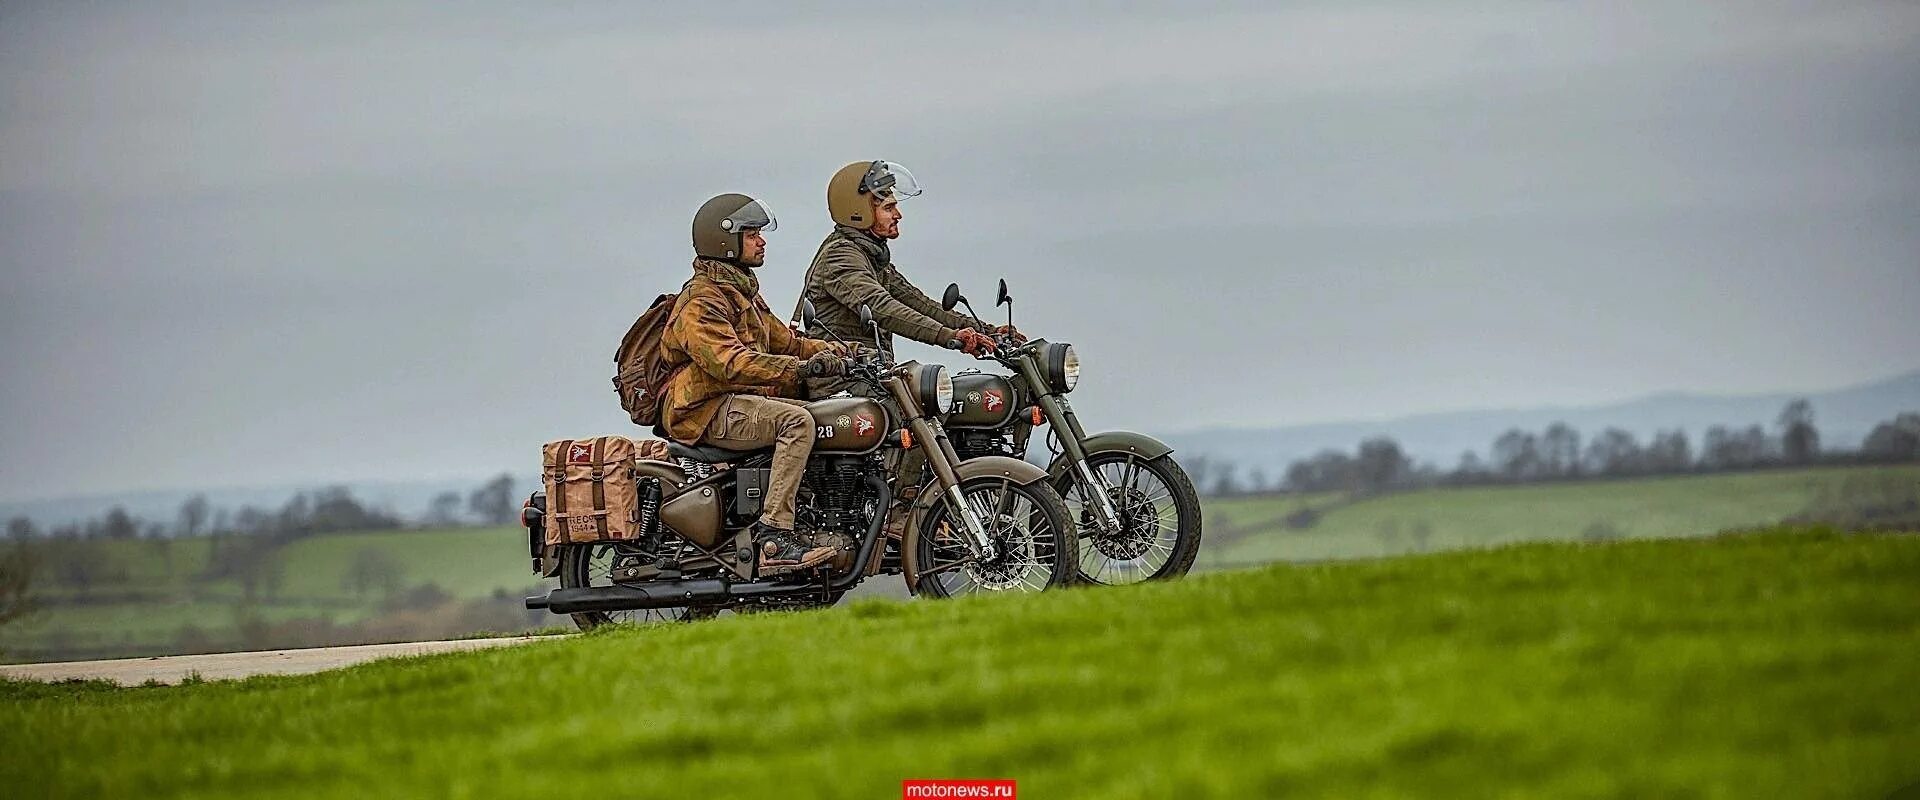 Современные военные мотоциклы. Индийские военные на мотоцикле. Мотоцикл Легенда. Ройал легенд мотоцикл.